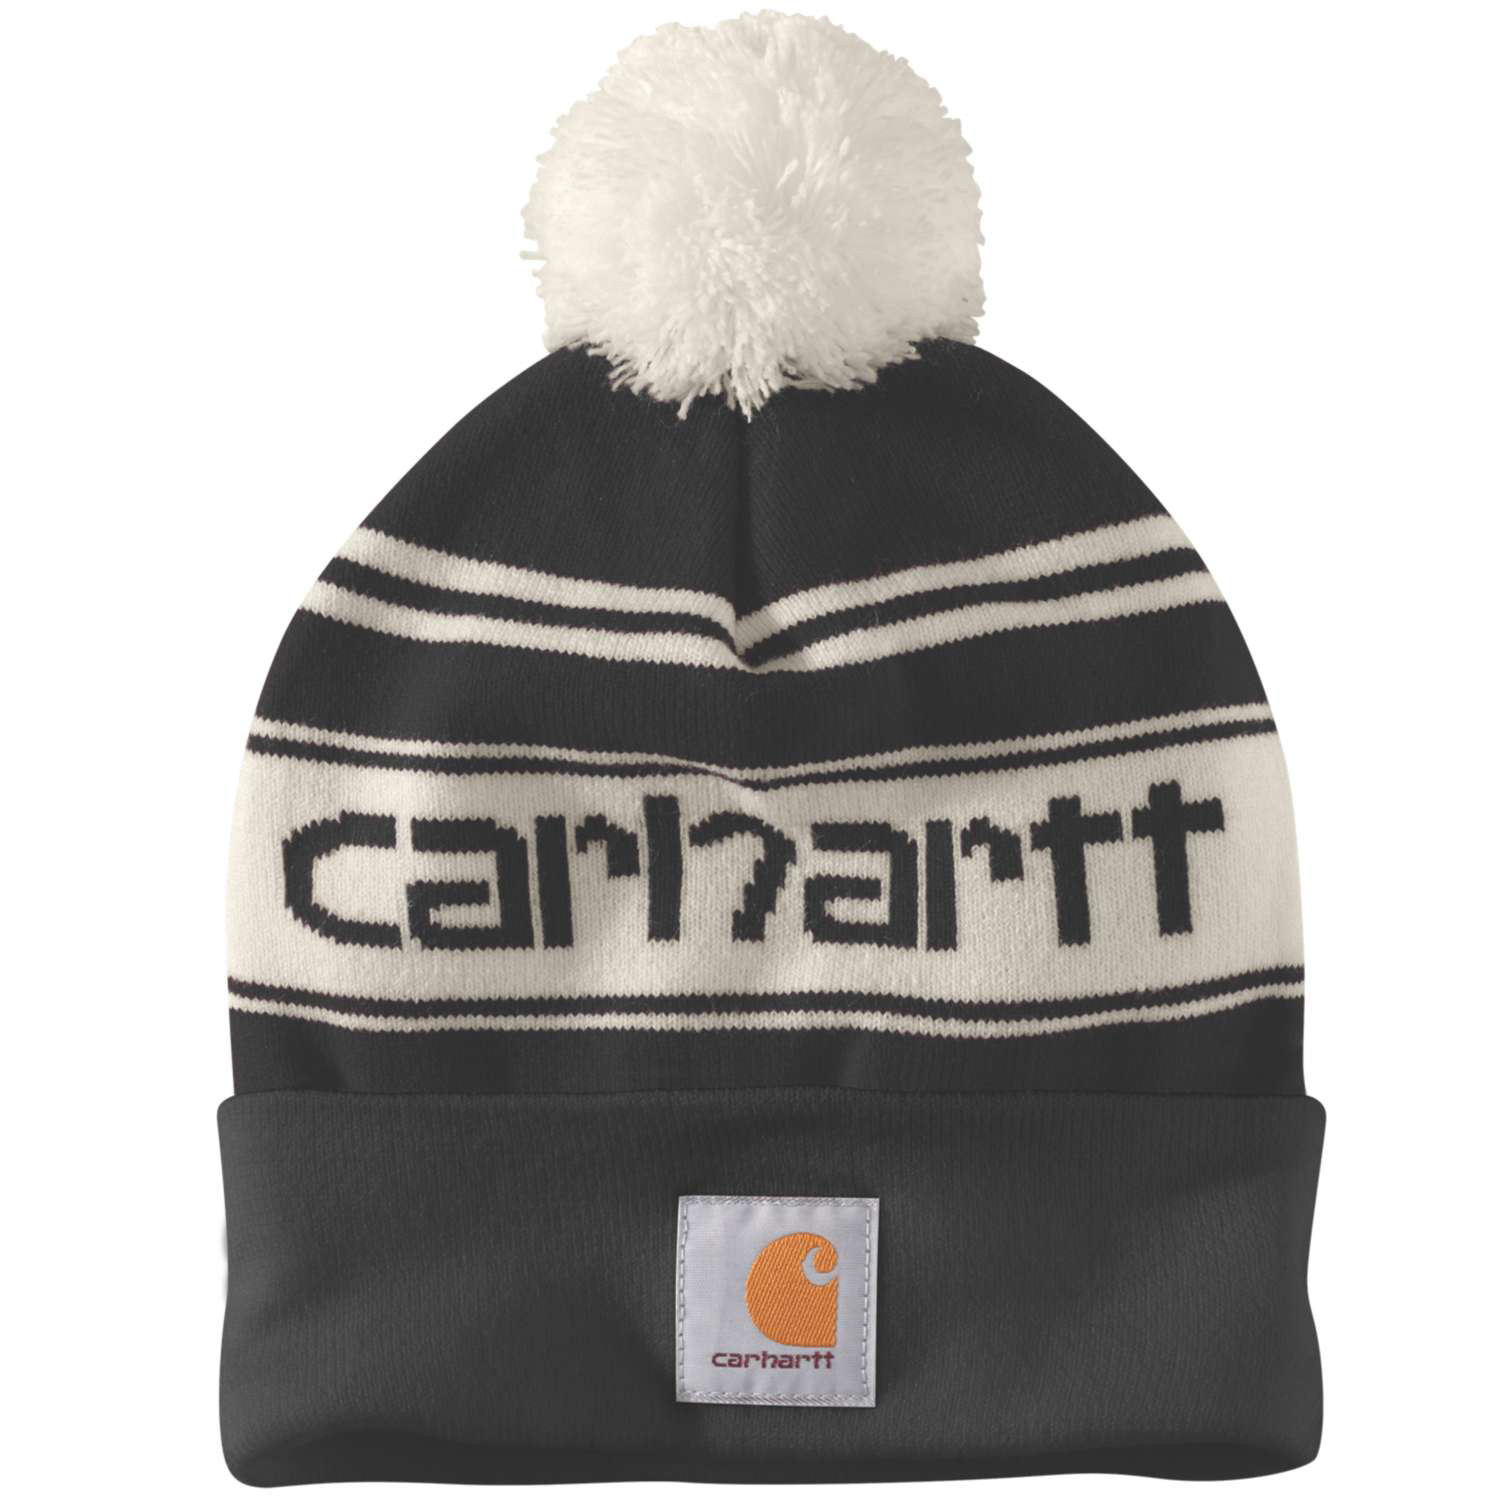 Carhartt Knit Pom-Pom Logo Beanie schwarz weiss